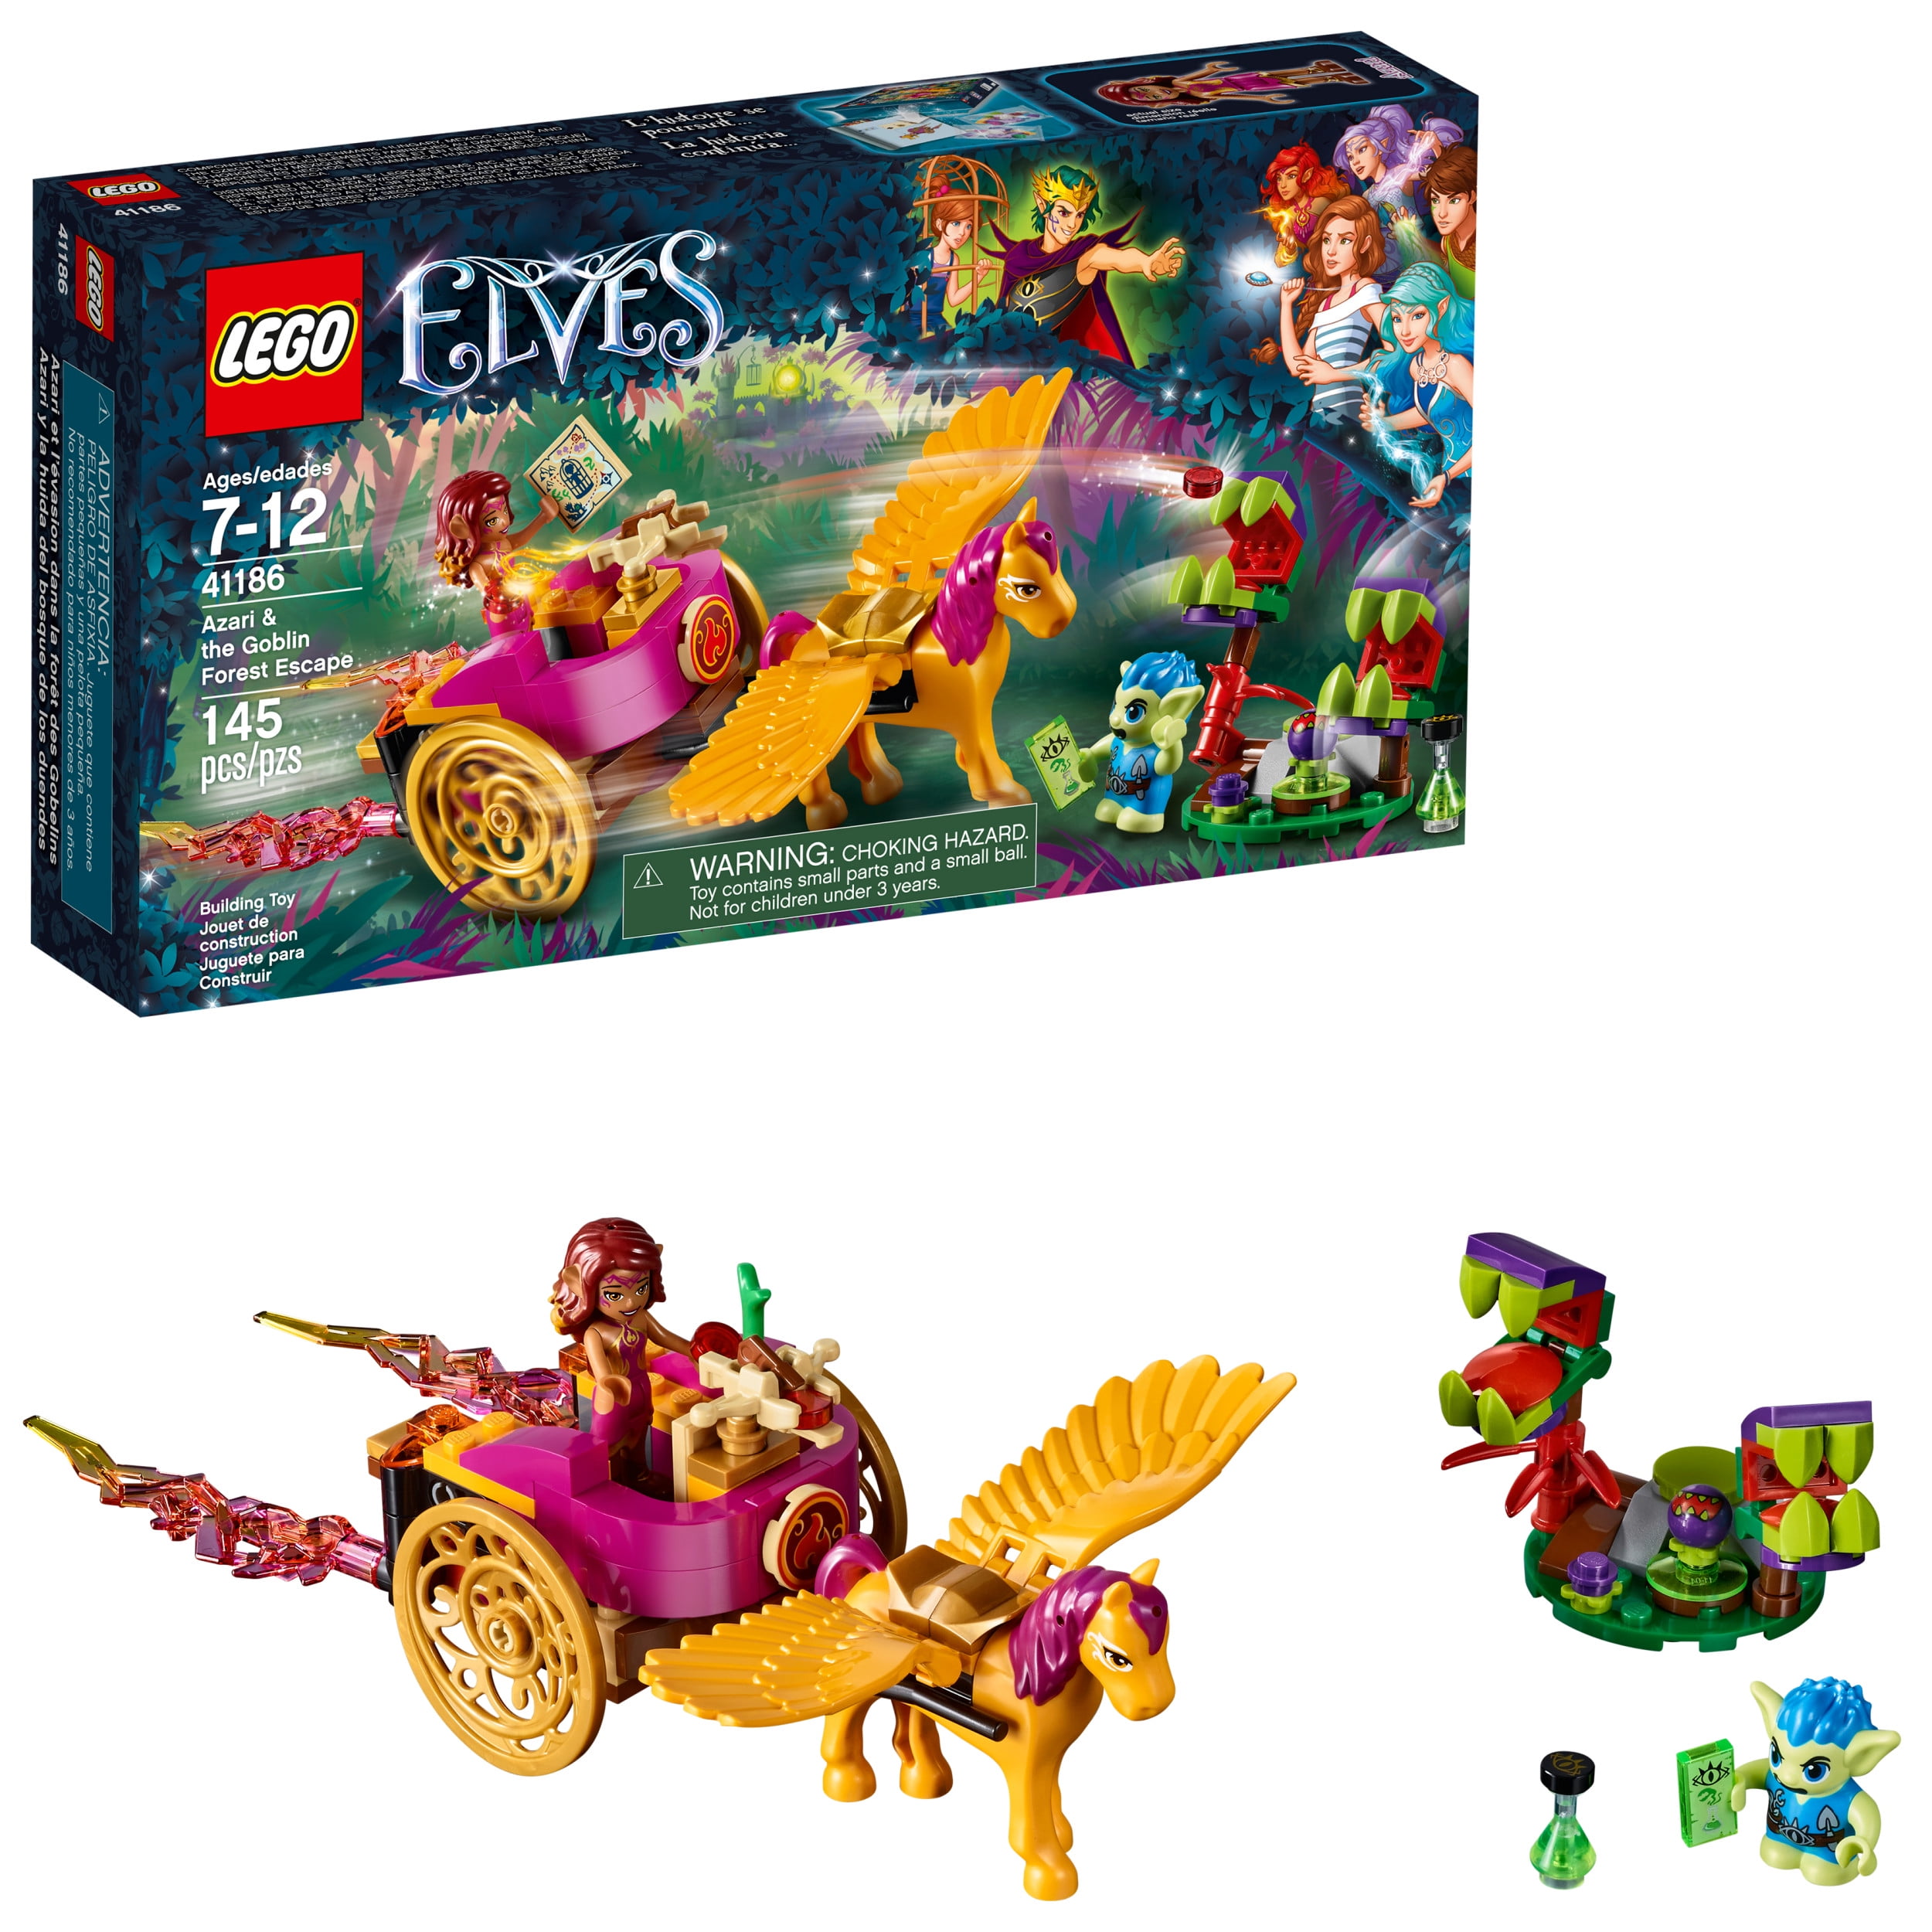 LEGO Elves 41186 Azari & The Goblin Forest Escape 145pcs 2017 for sale online 